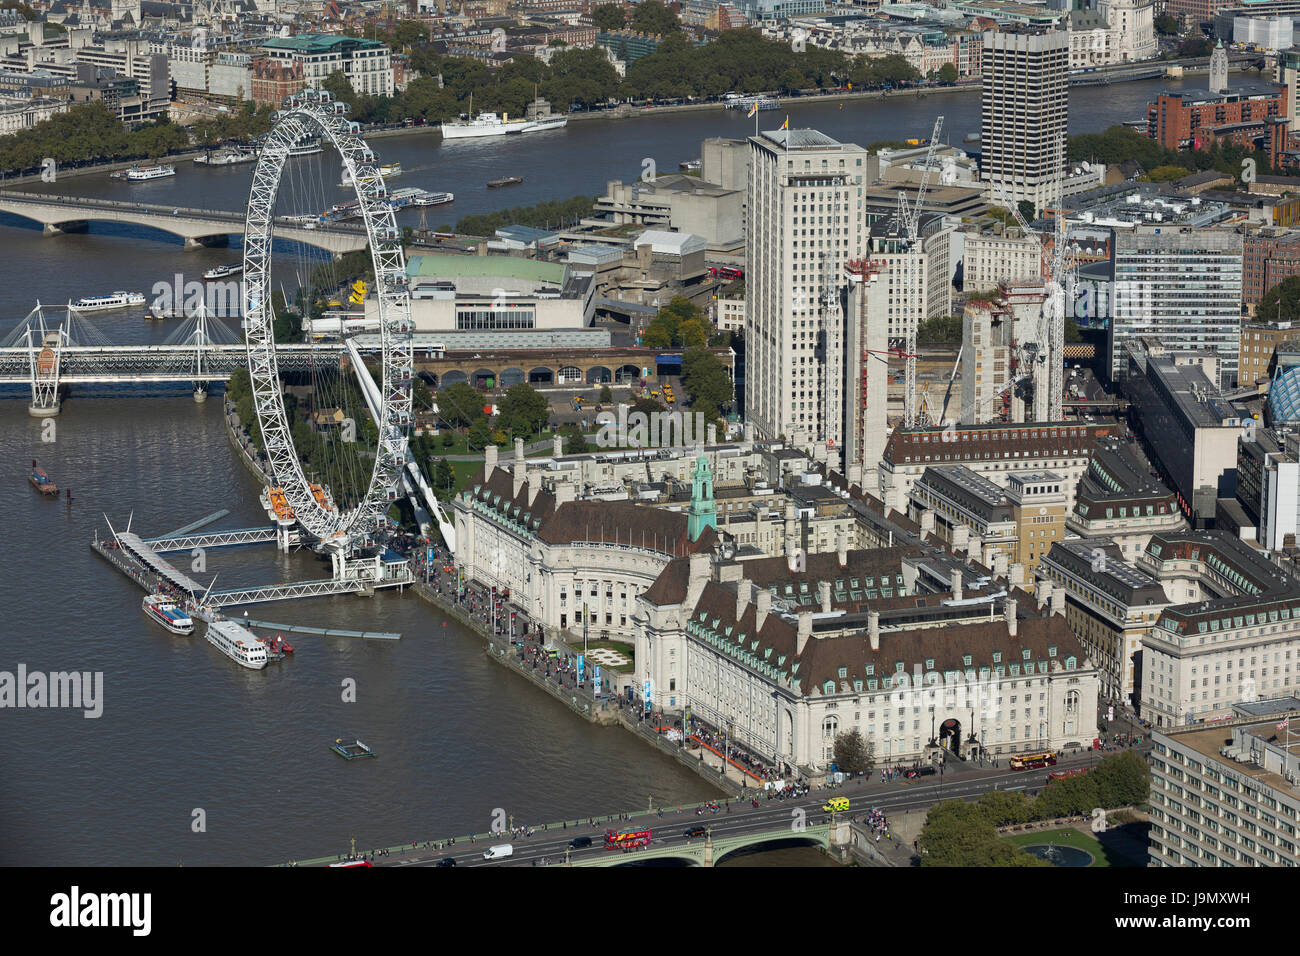 Le London Eye se trouve sur la rive sud de la Tamise. Le Jubilee Gardens et le County Hall bâtiment. Lambeth, London Banque D'Images